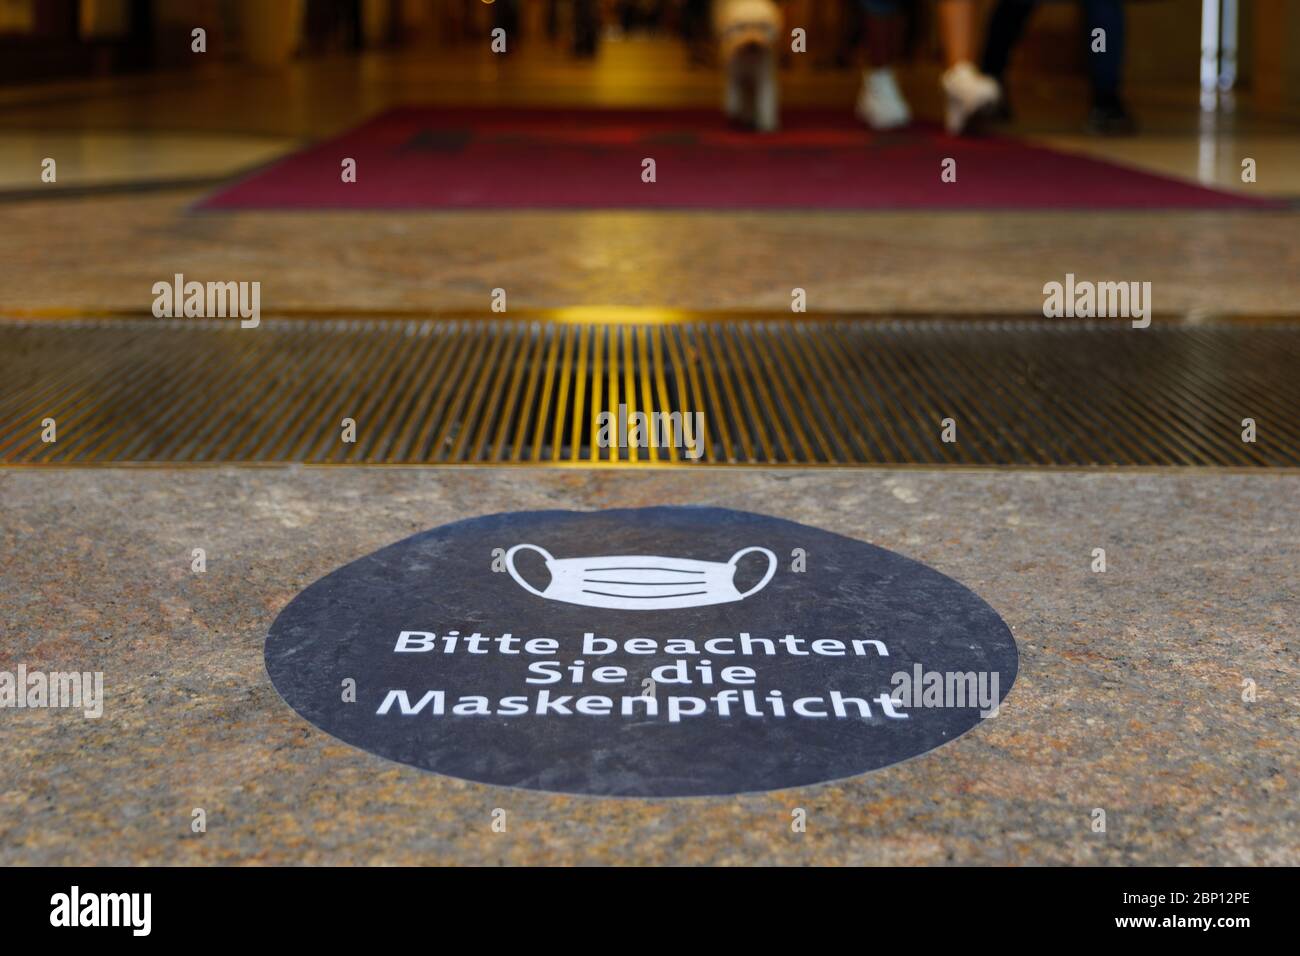 Simbolo e testo della maschera bianca con ' Bitte beachten Sie die Maskenpflicht ' significa ' attenzione alla maschera', segno sul pavimento in Germania. Foto Stock